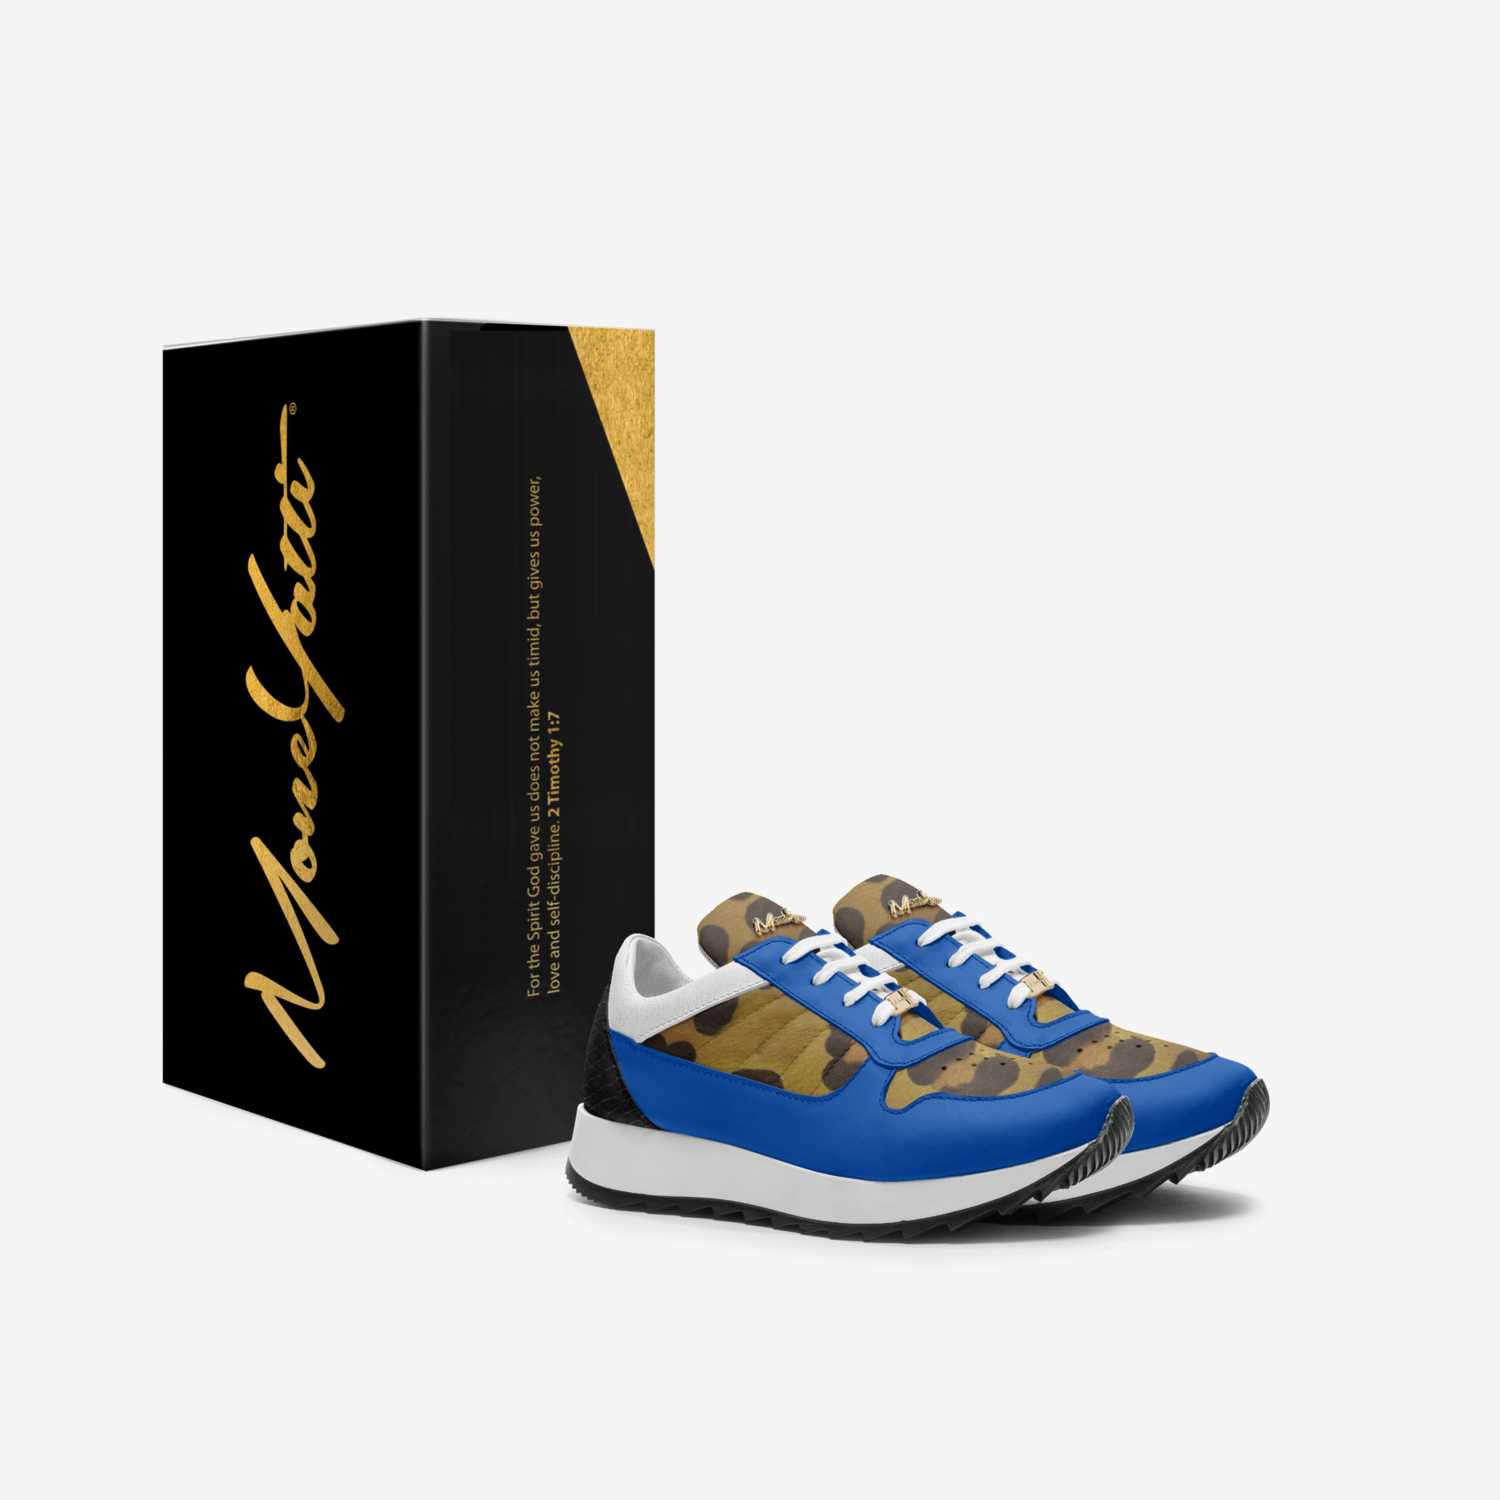 Moneyatti KidLw02 custom made in Italy shoes by Moneyatti Brand | Box view